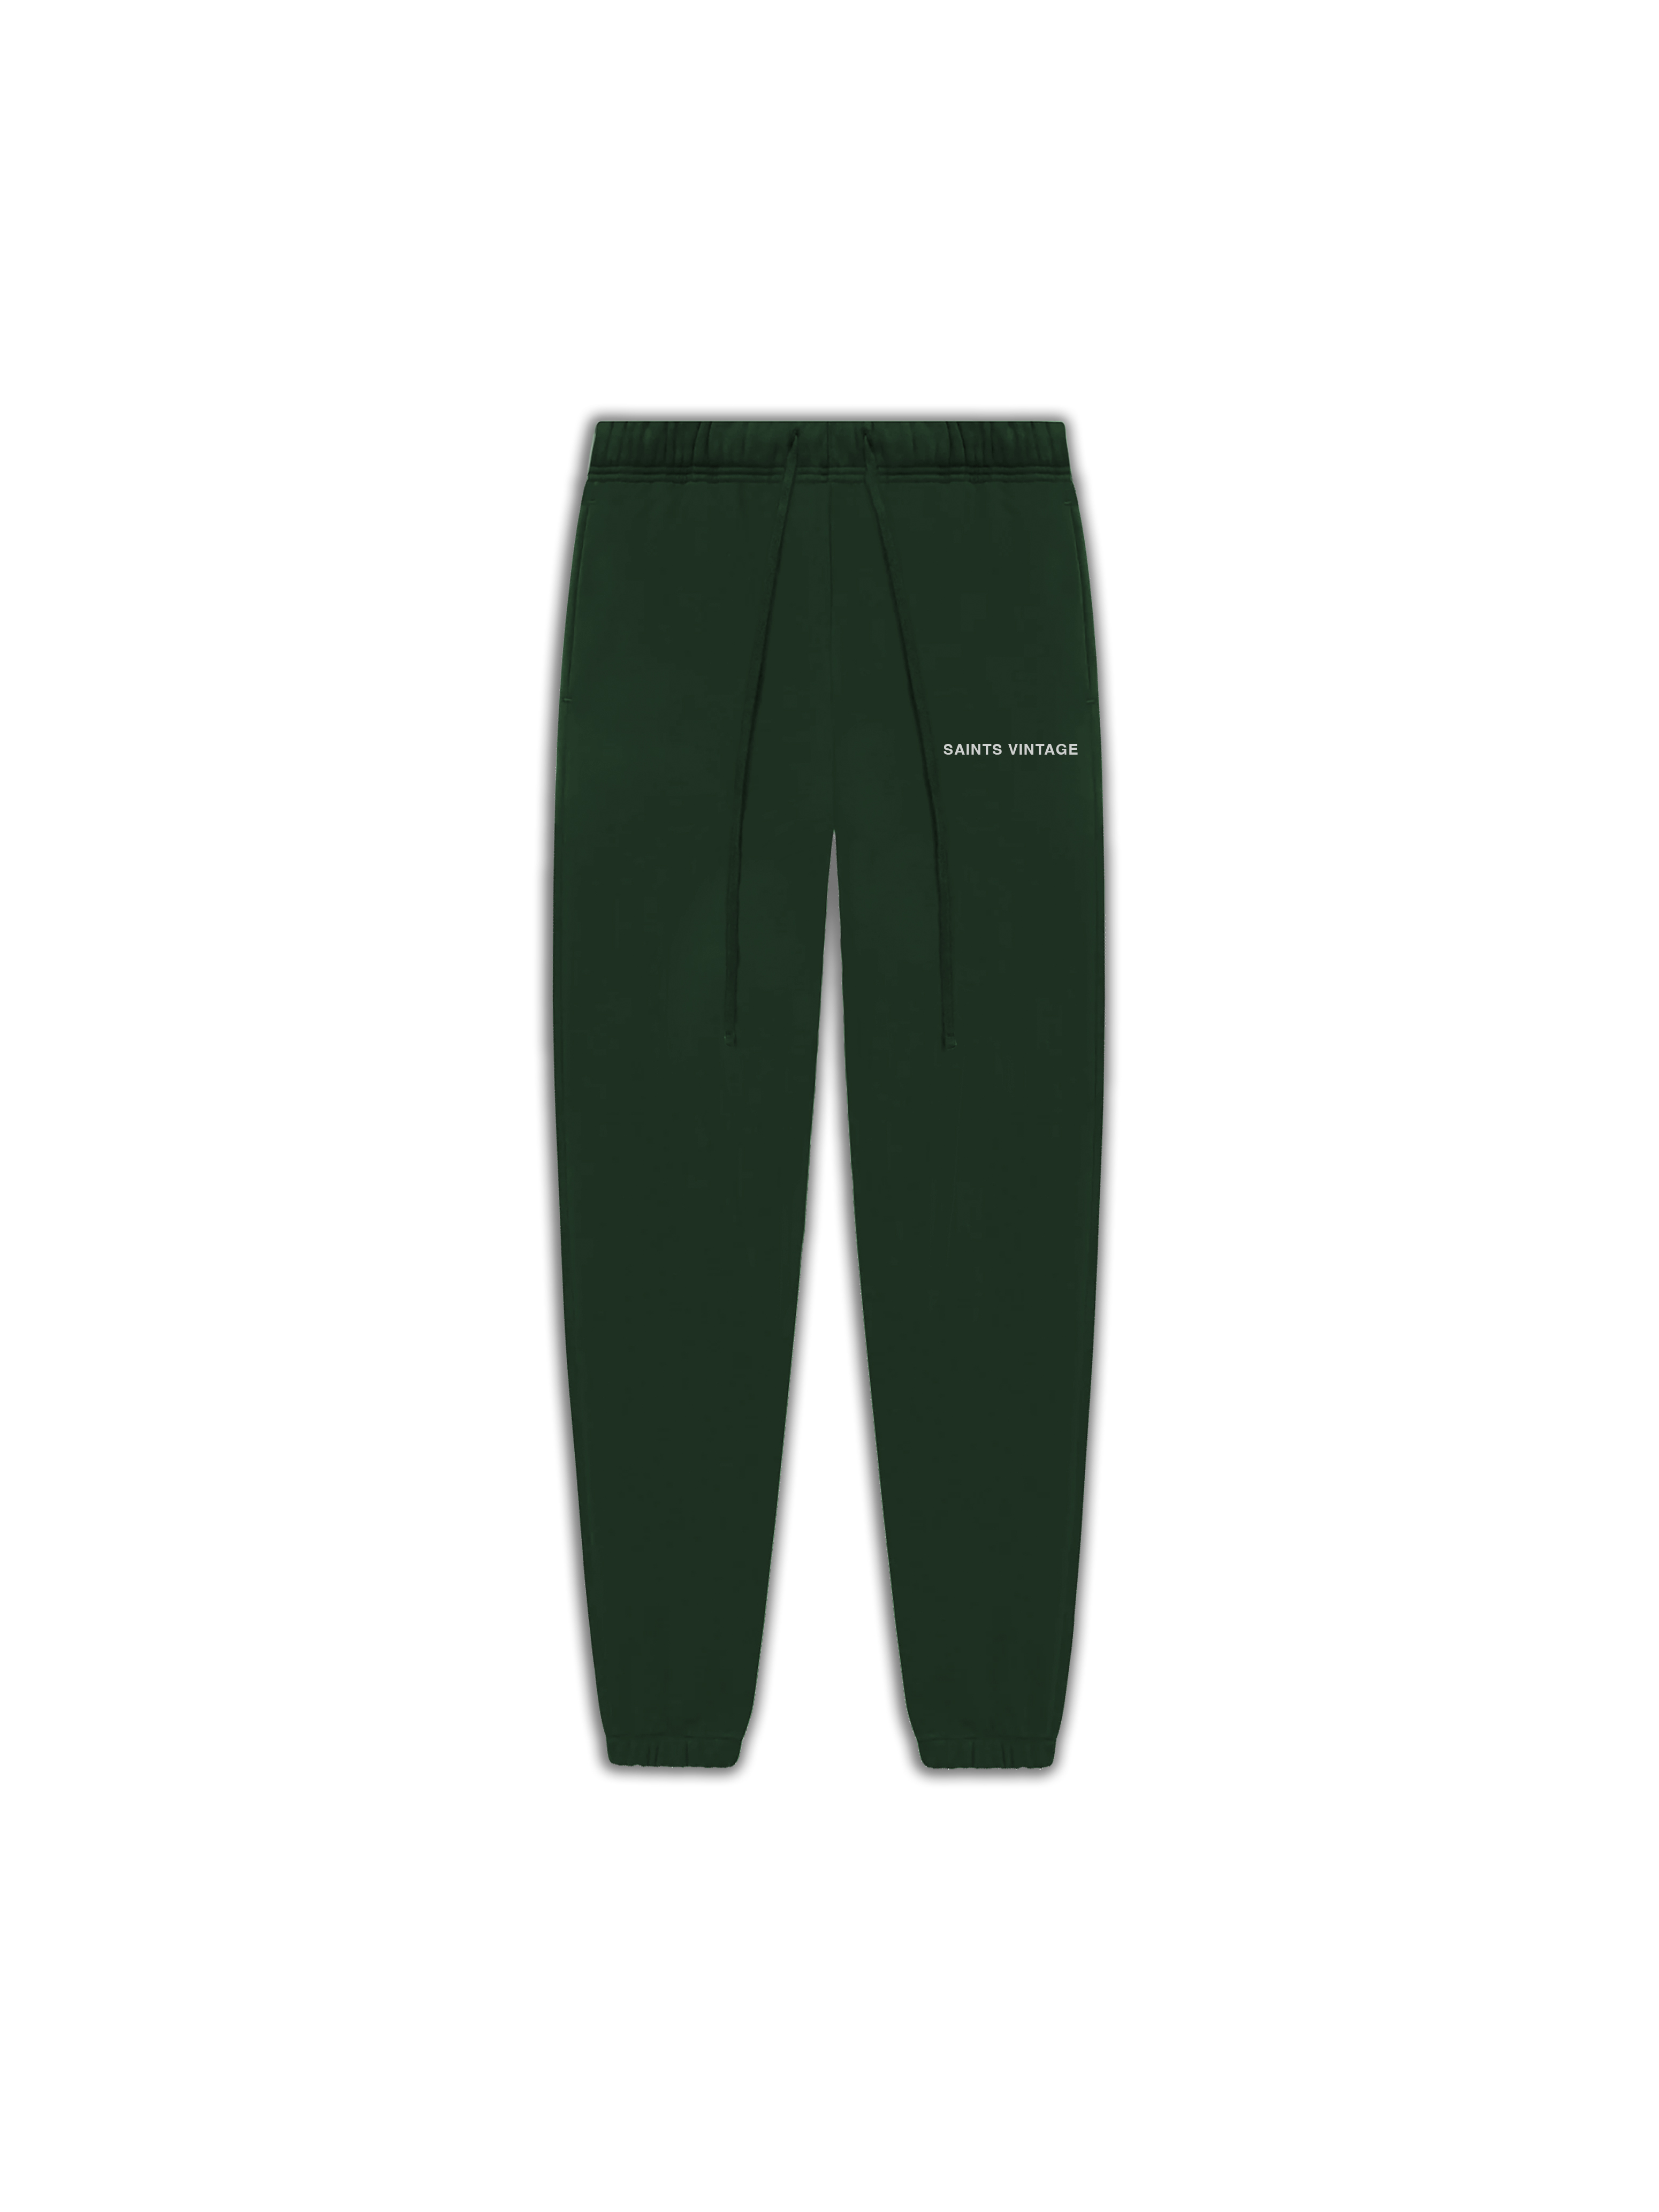 Saints Vintage Sweatpants Green